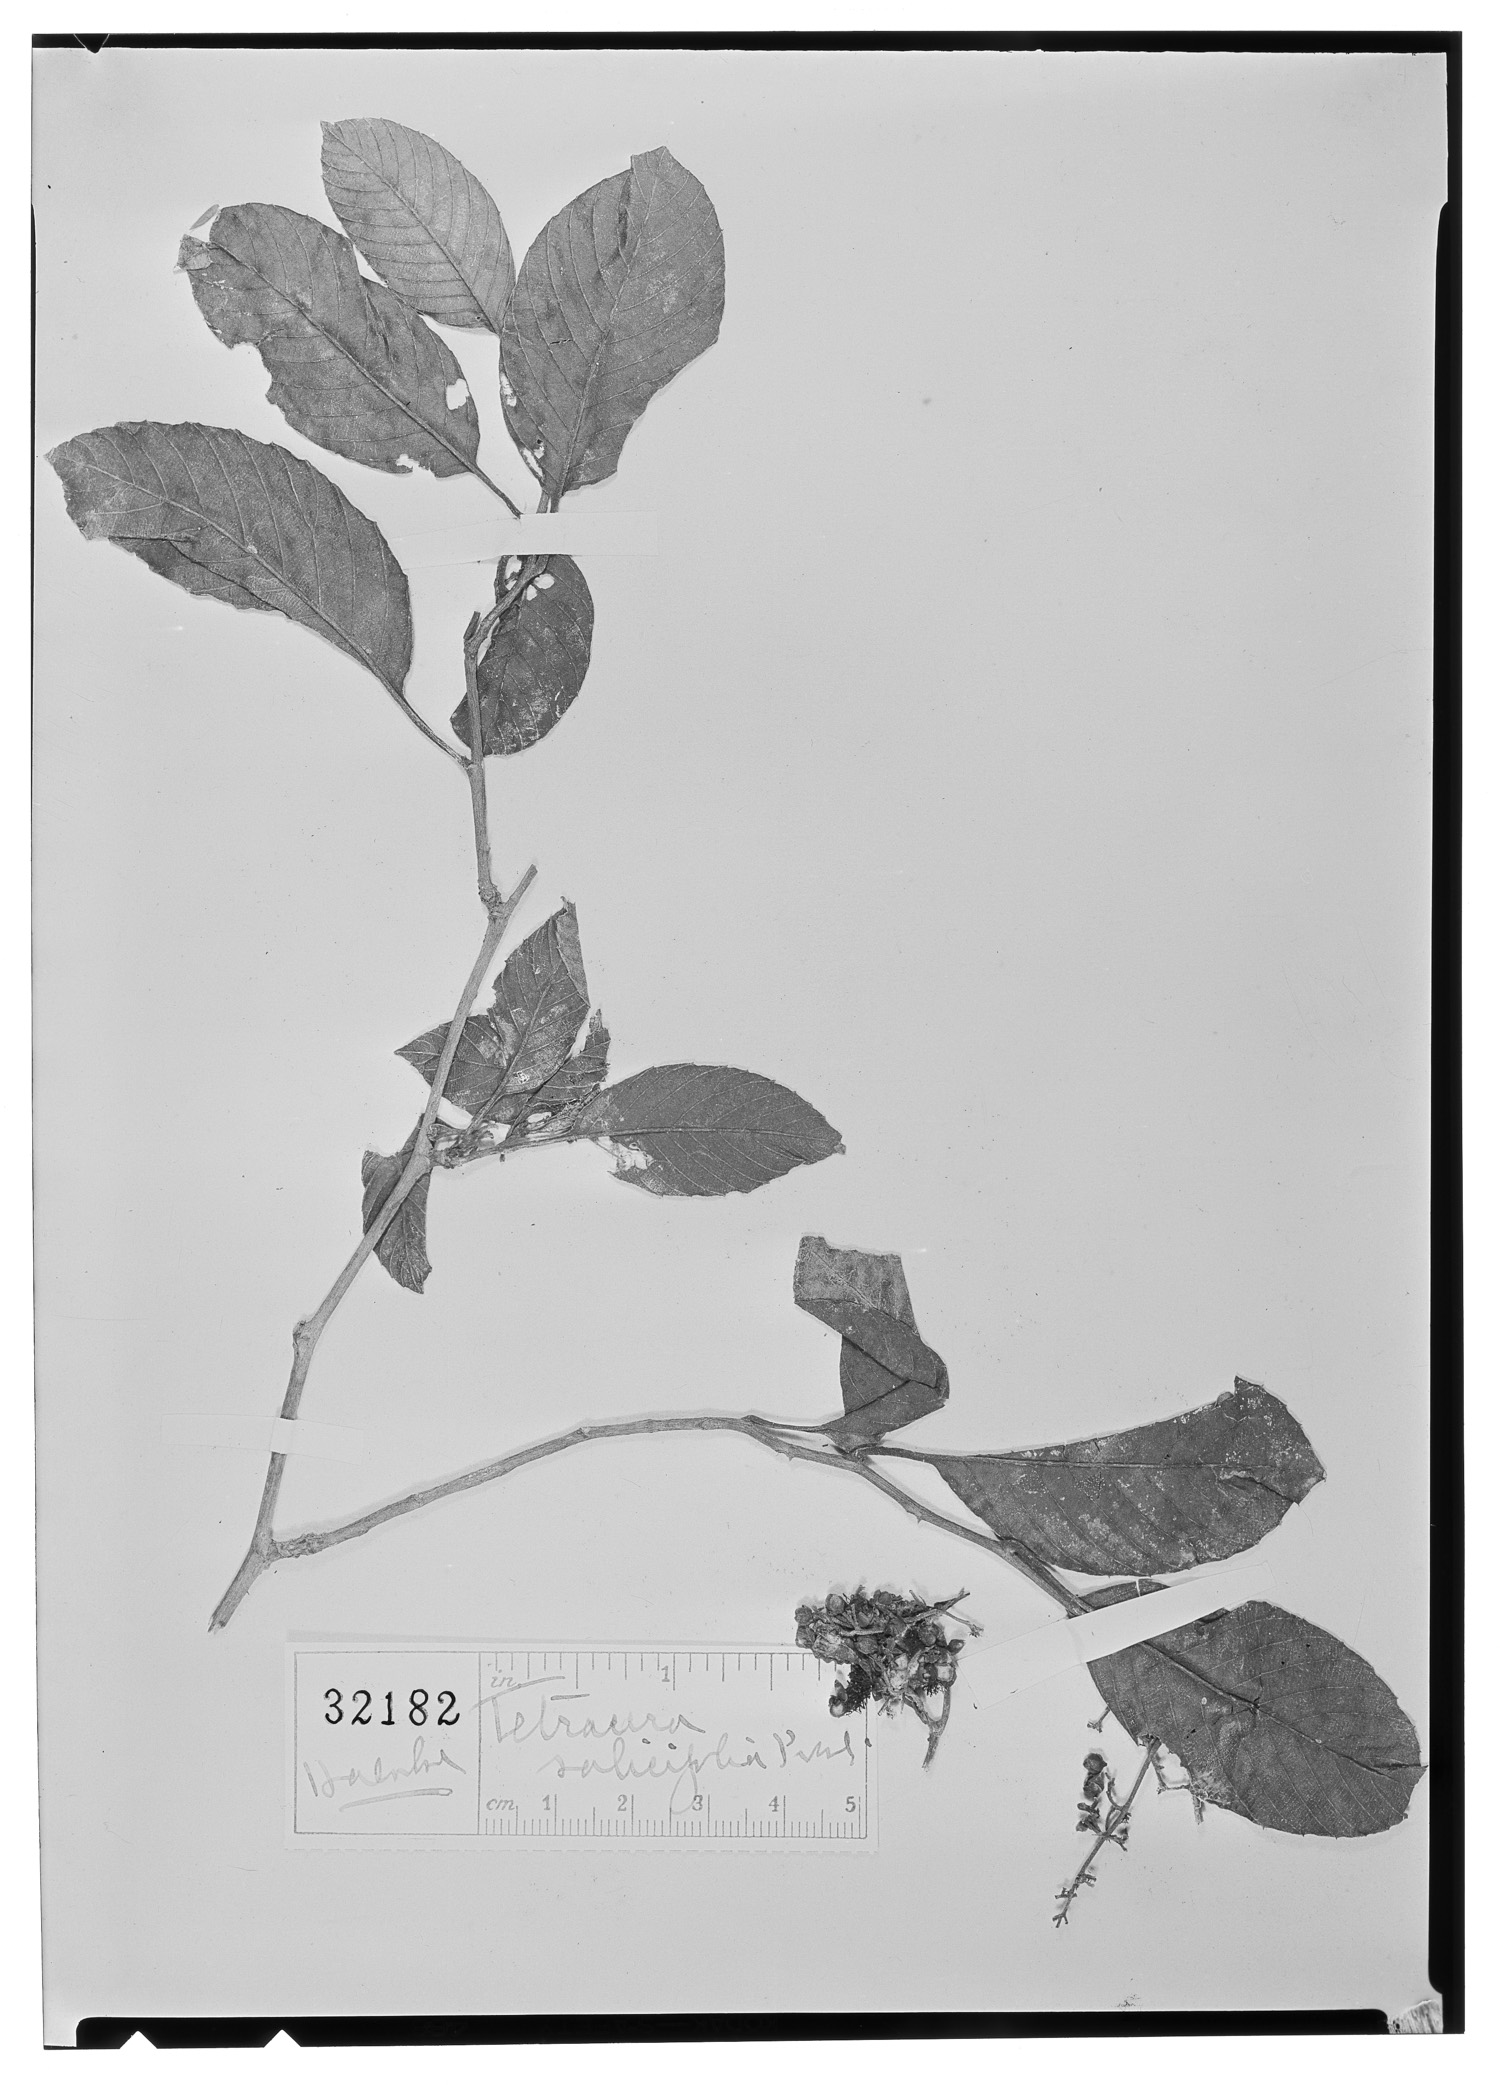 Tetracera volubilis subsp. volubilis image